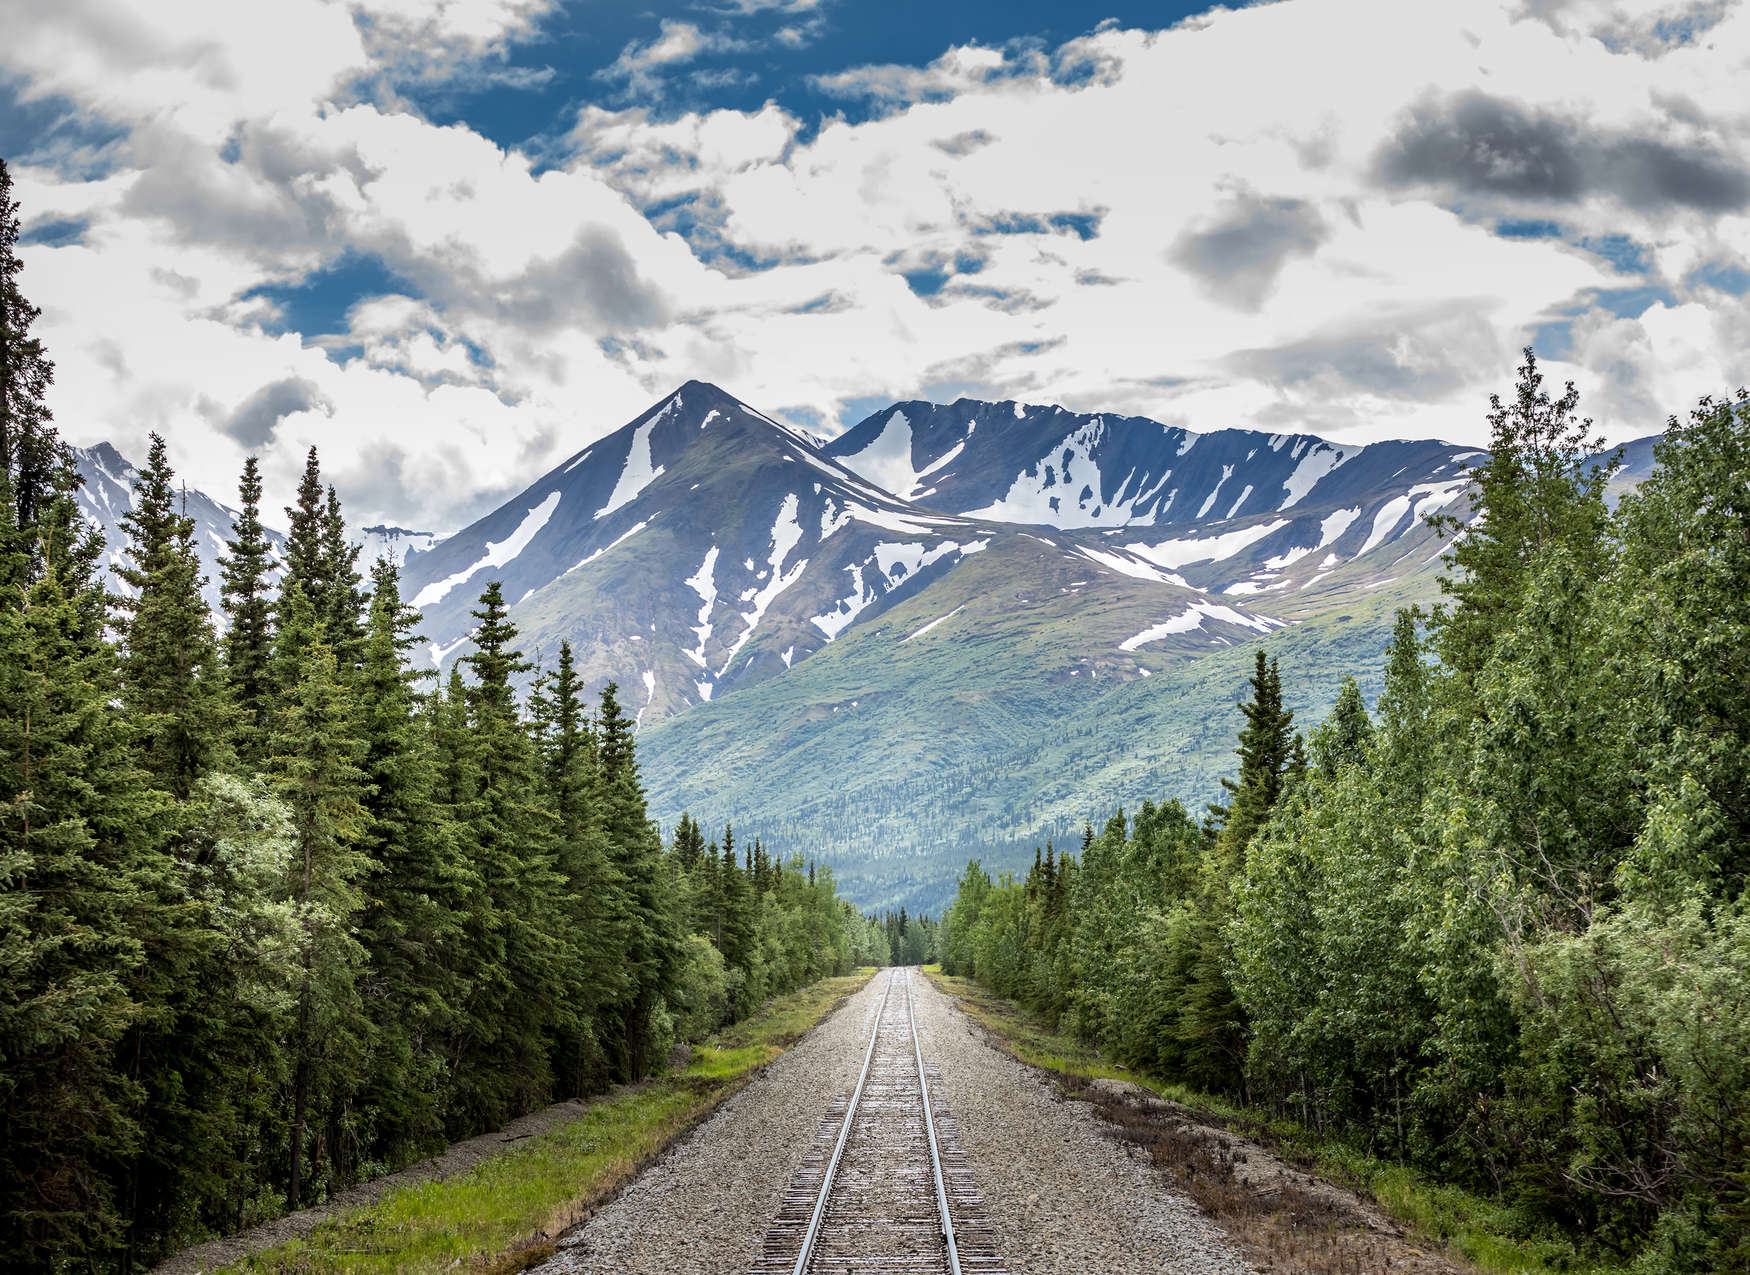             Fotomurali con binari del treno attraverso una foresta vicino alle montagne - Verde, blu, grigio
        